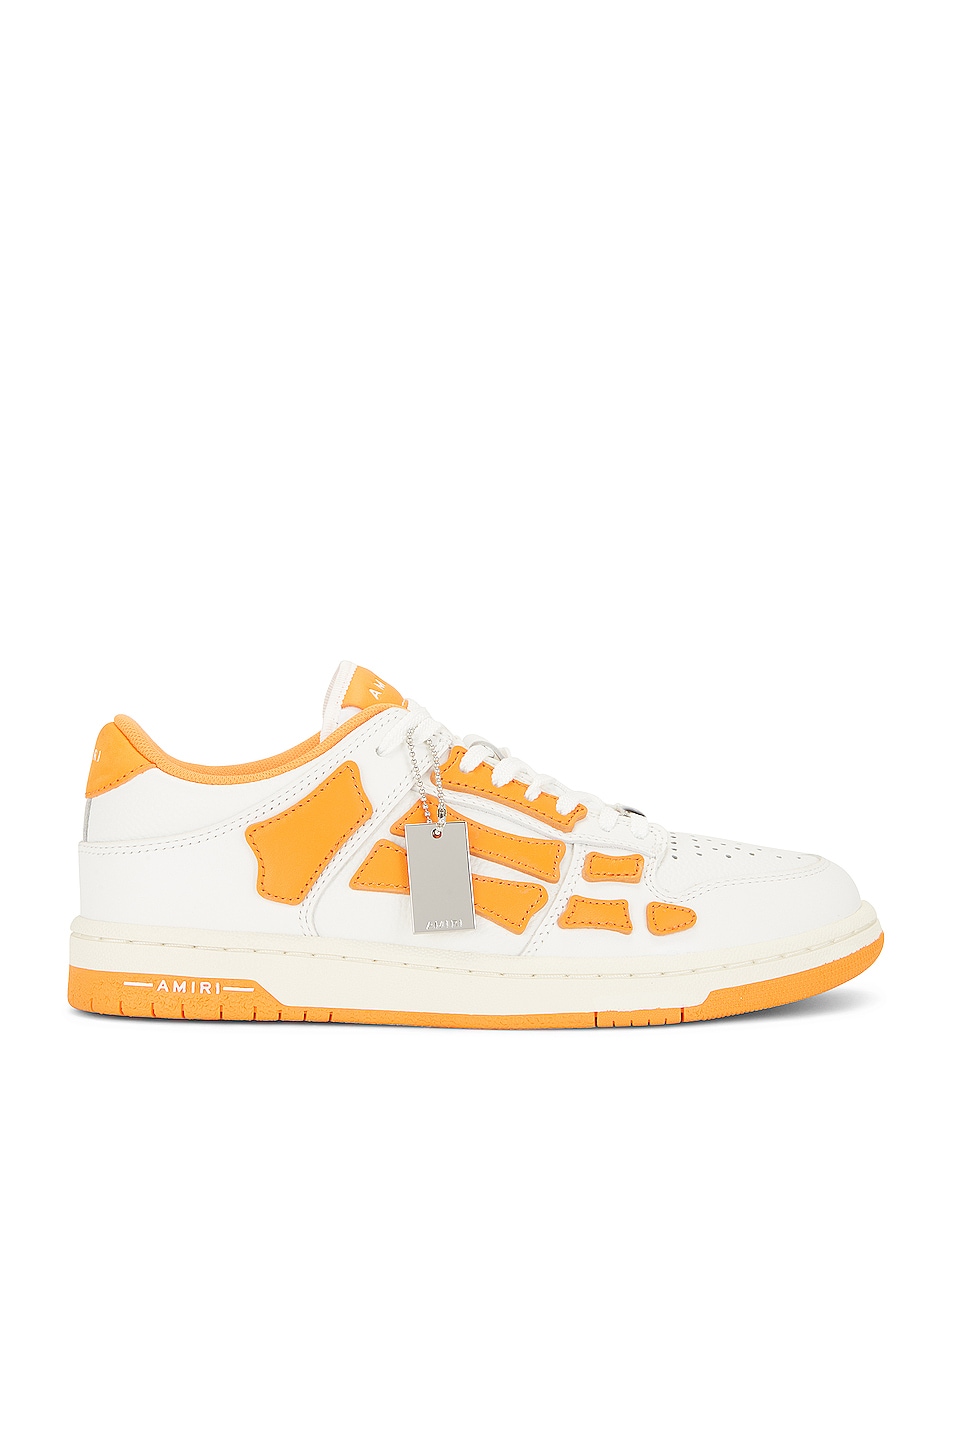 Amiri Skel Low Top Sneaker in White & Orange | FWRD